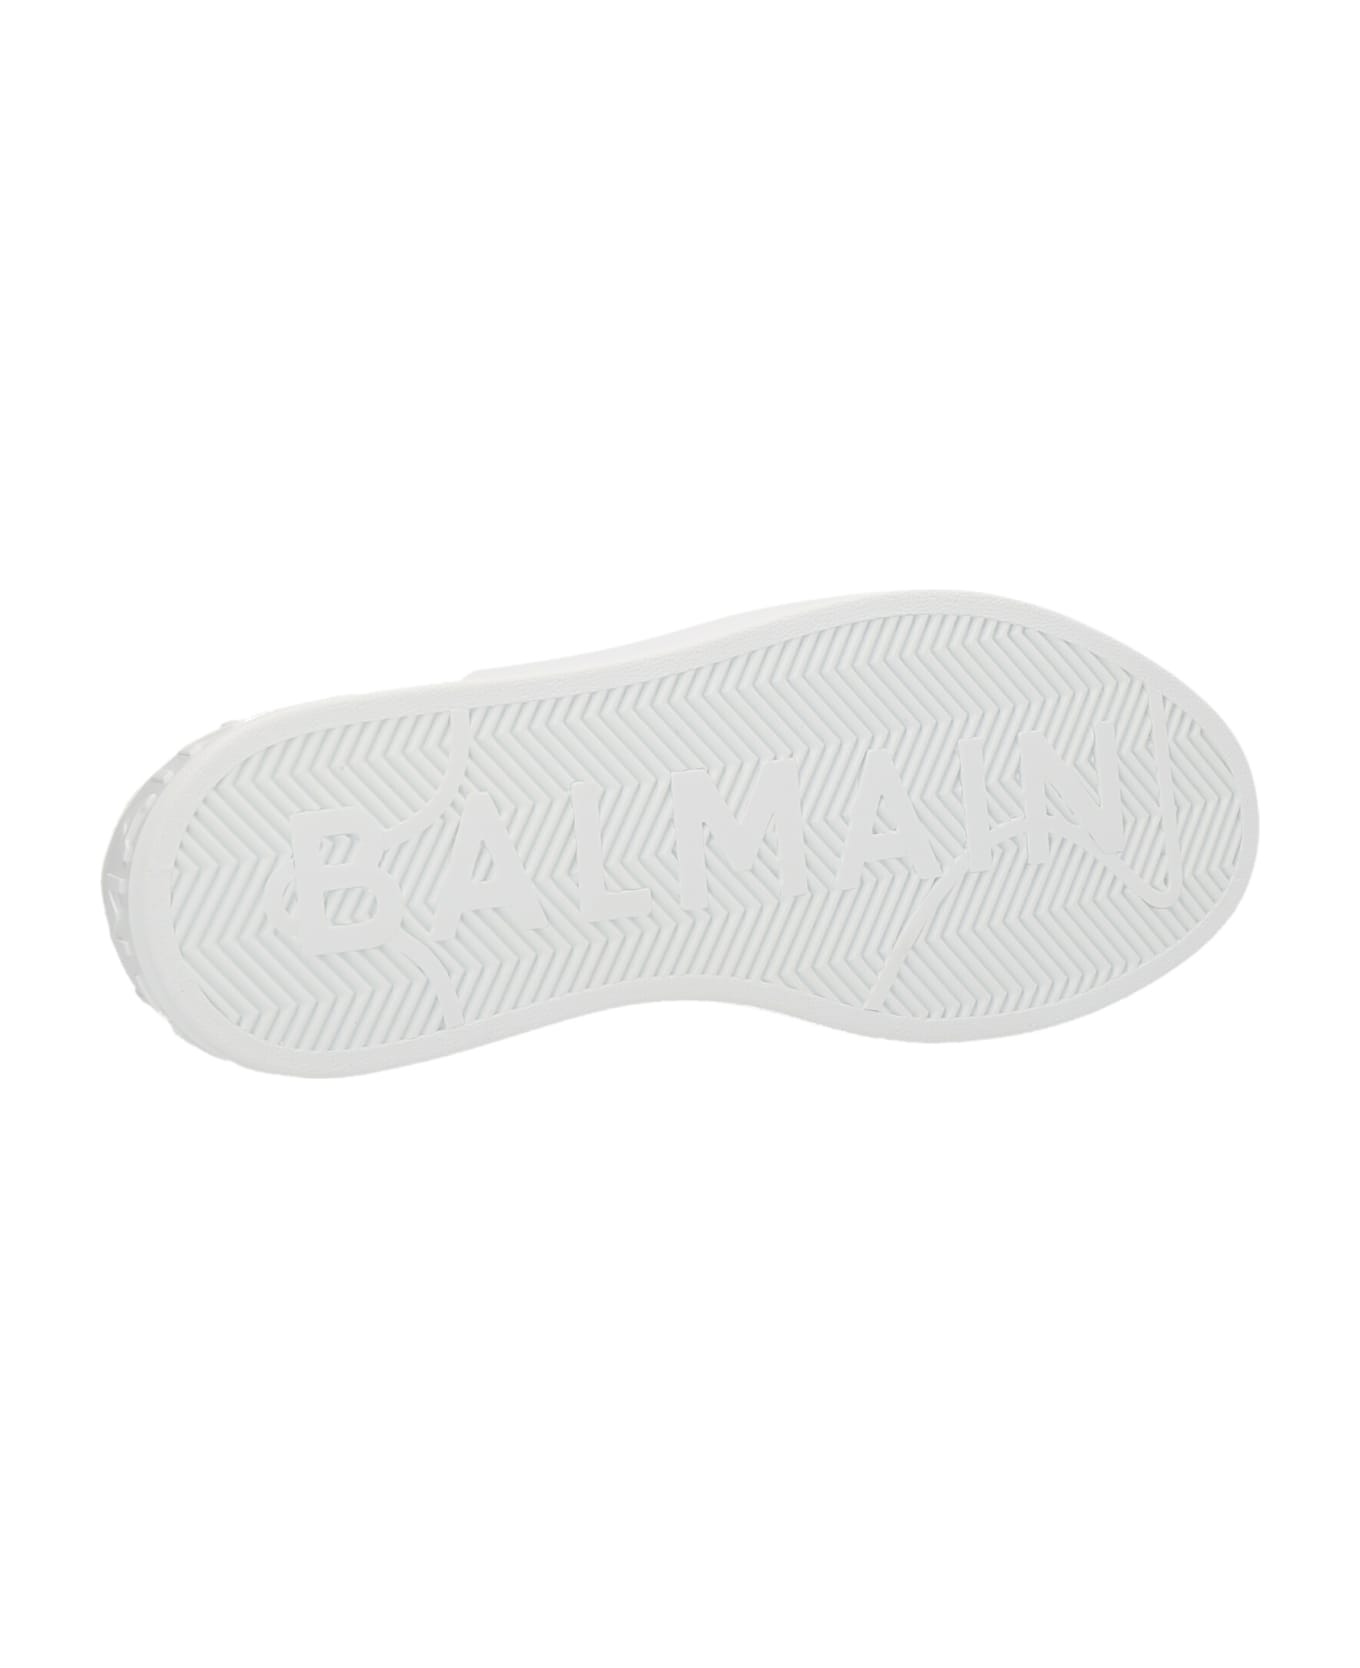 Balmain Logo Leather Sneakers - White